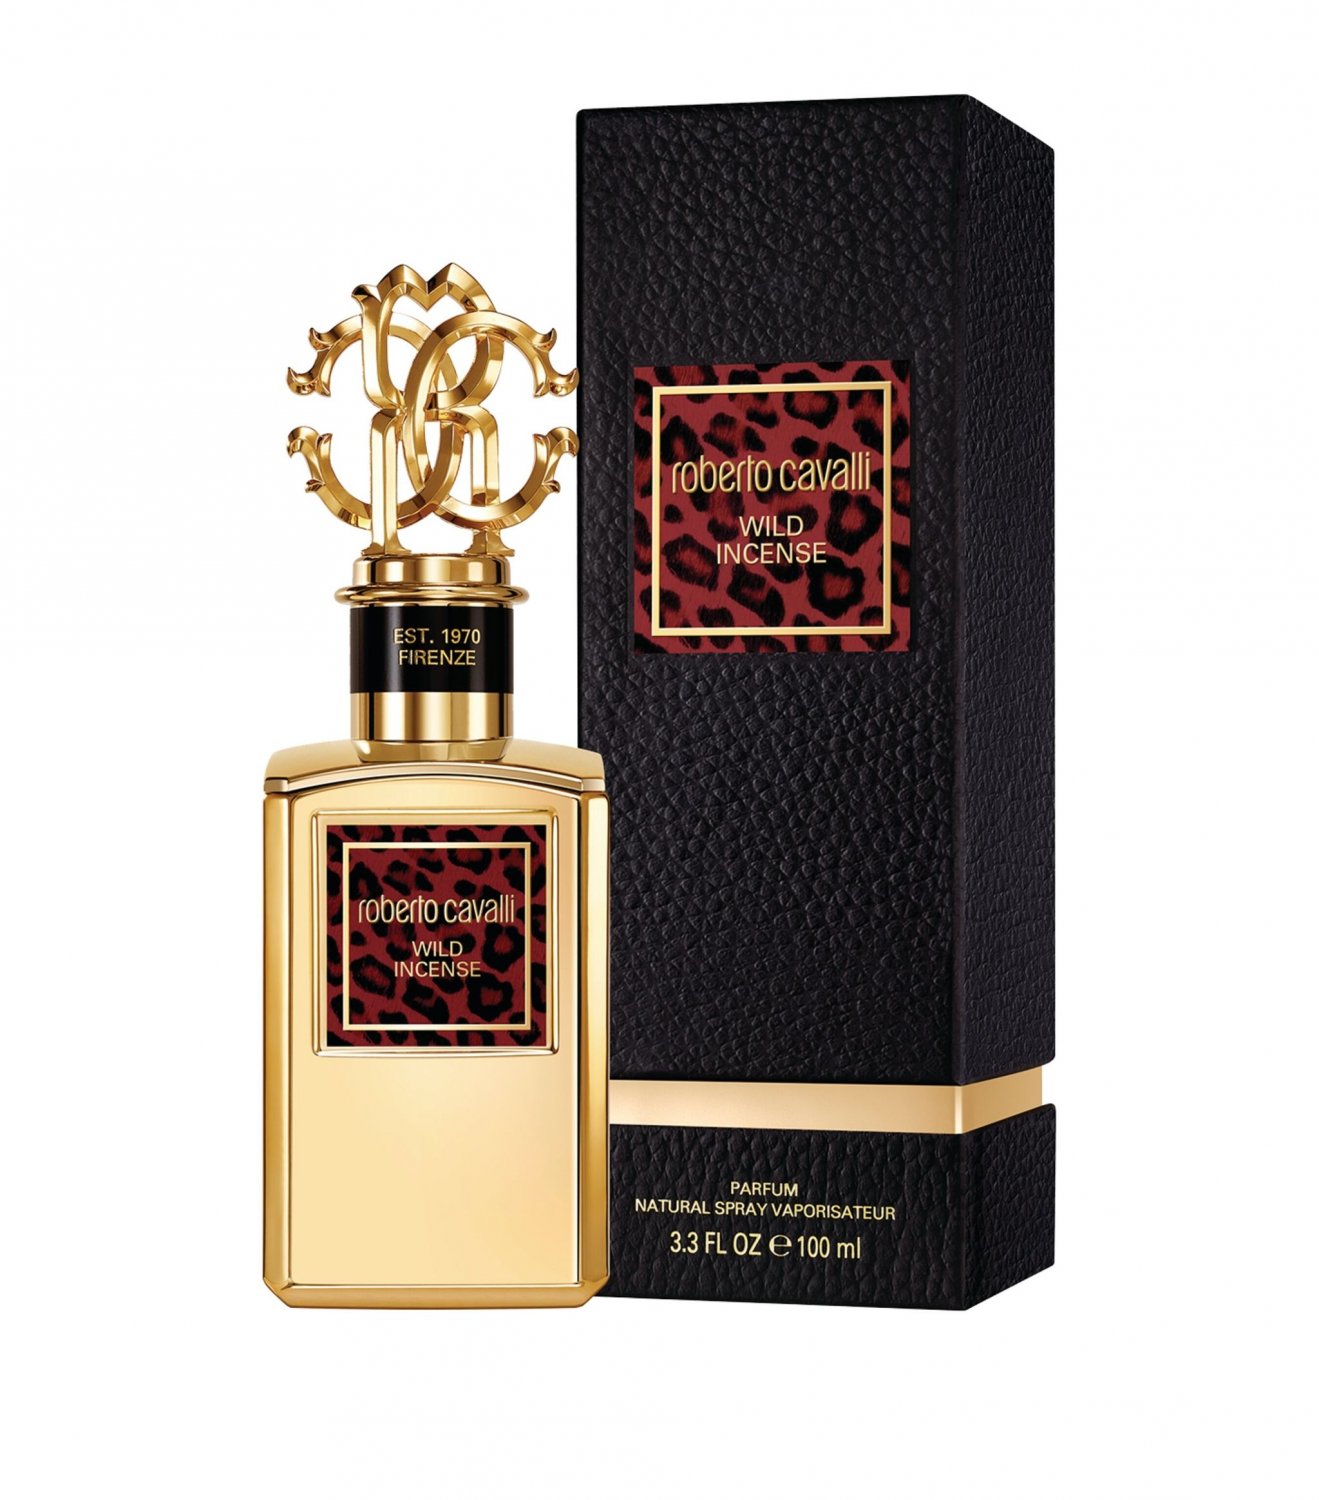 Roberto Cavalli Gold Collection Wild Incense Perfume Eau de Parfum 3.3 oz Spray.